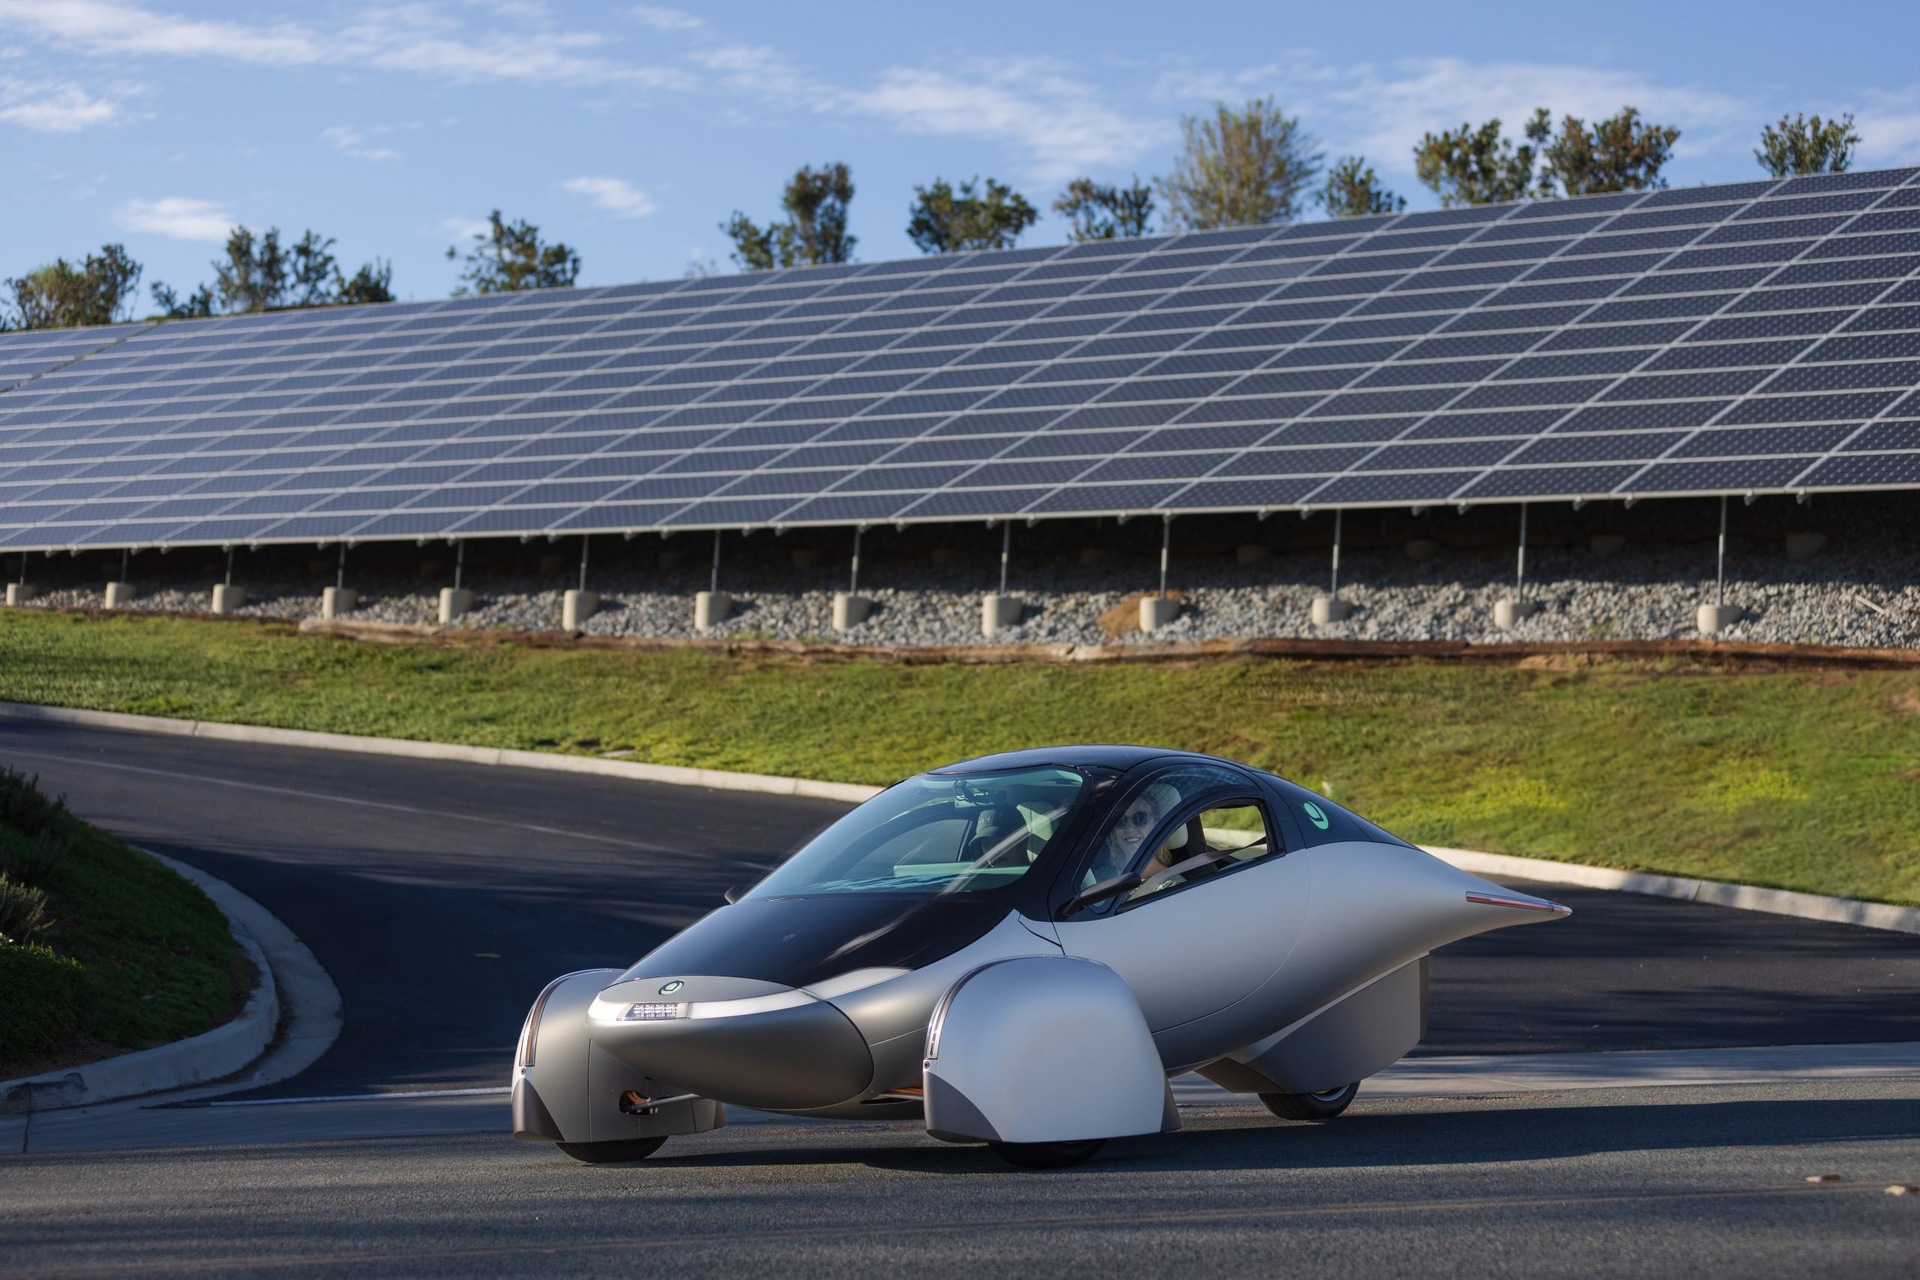 Solar car: ang Aptera Delta ay ang pinakanapapanatiling kotse sa mundo, na may hanay na 1600 km sa lakas ng baterya at 70 km sa solar energy